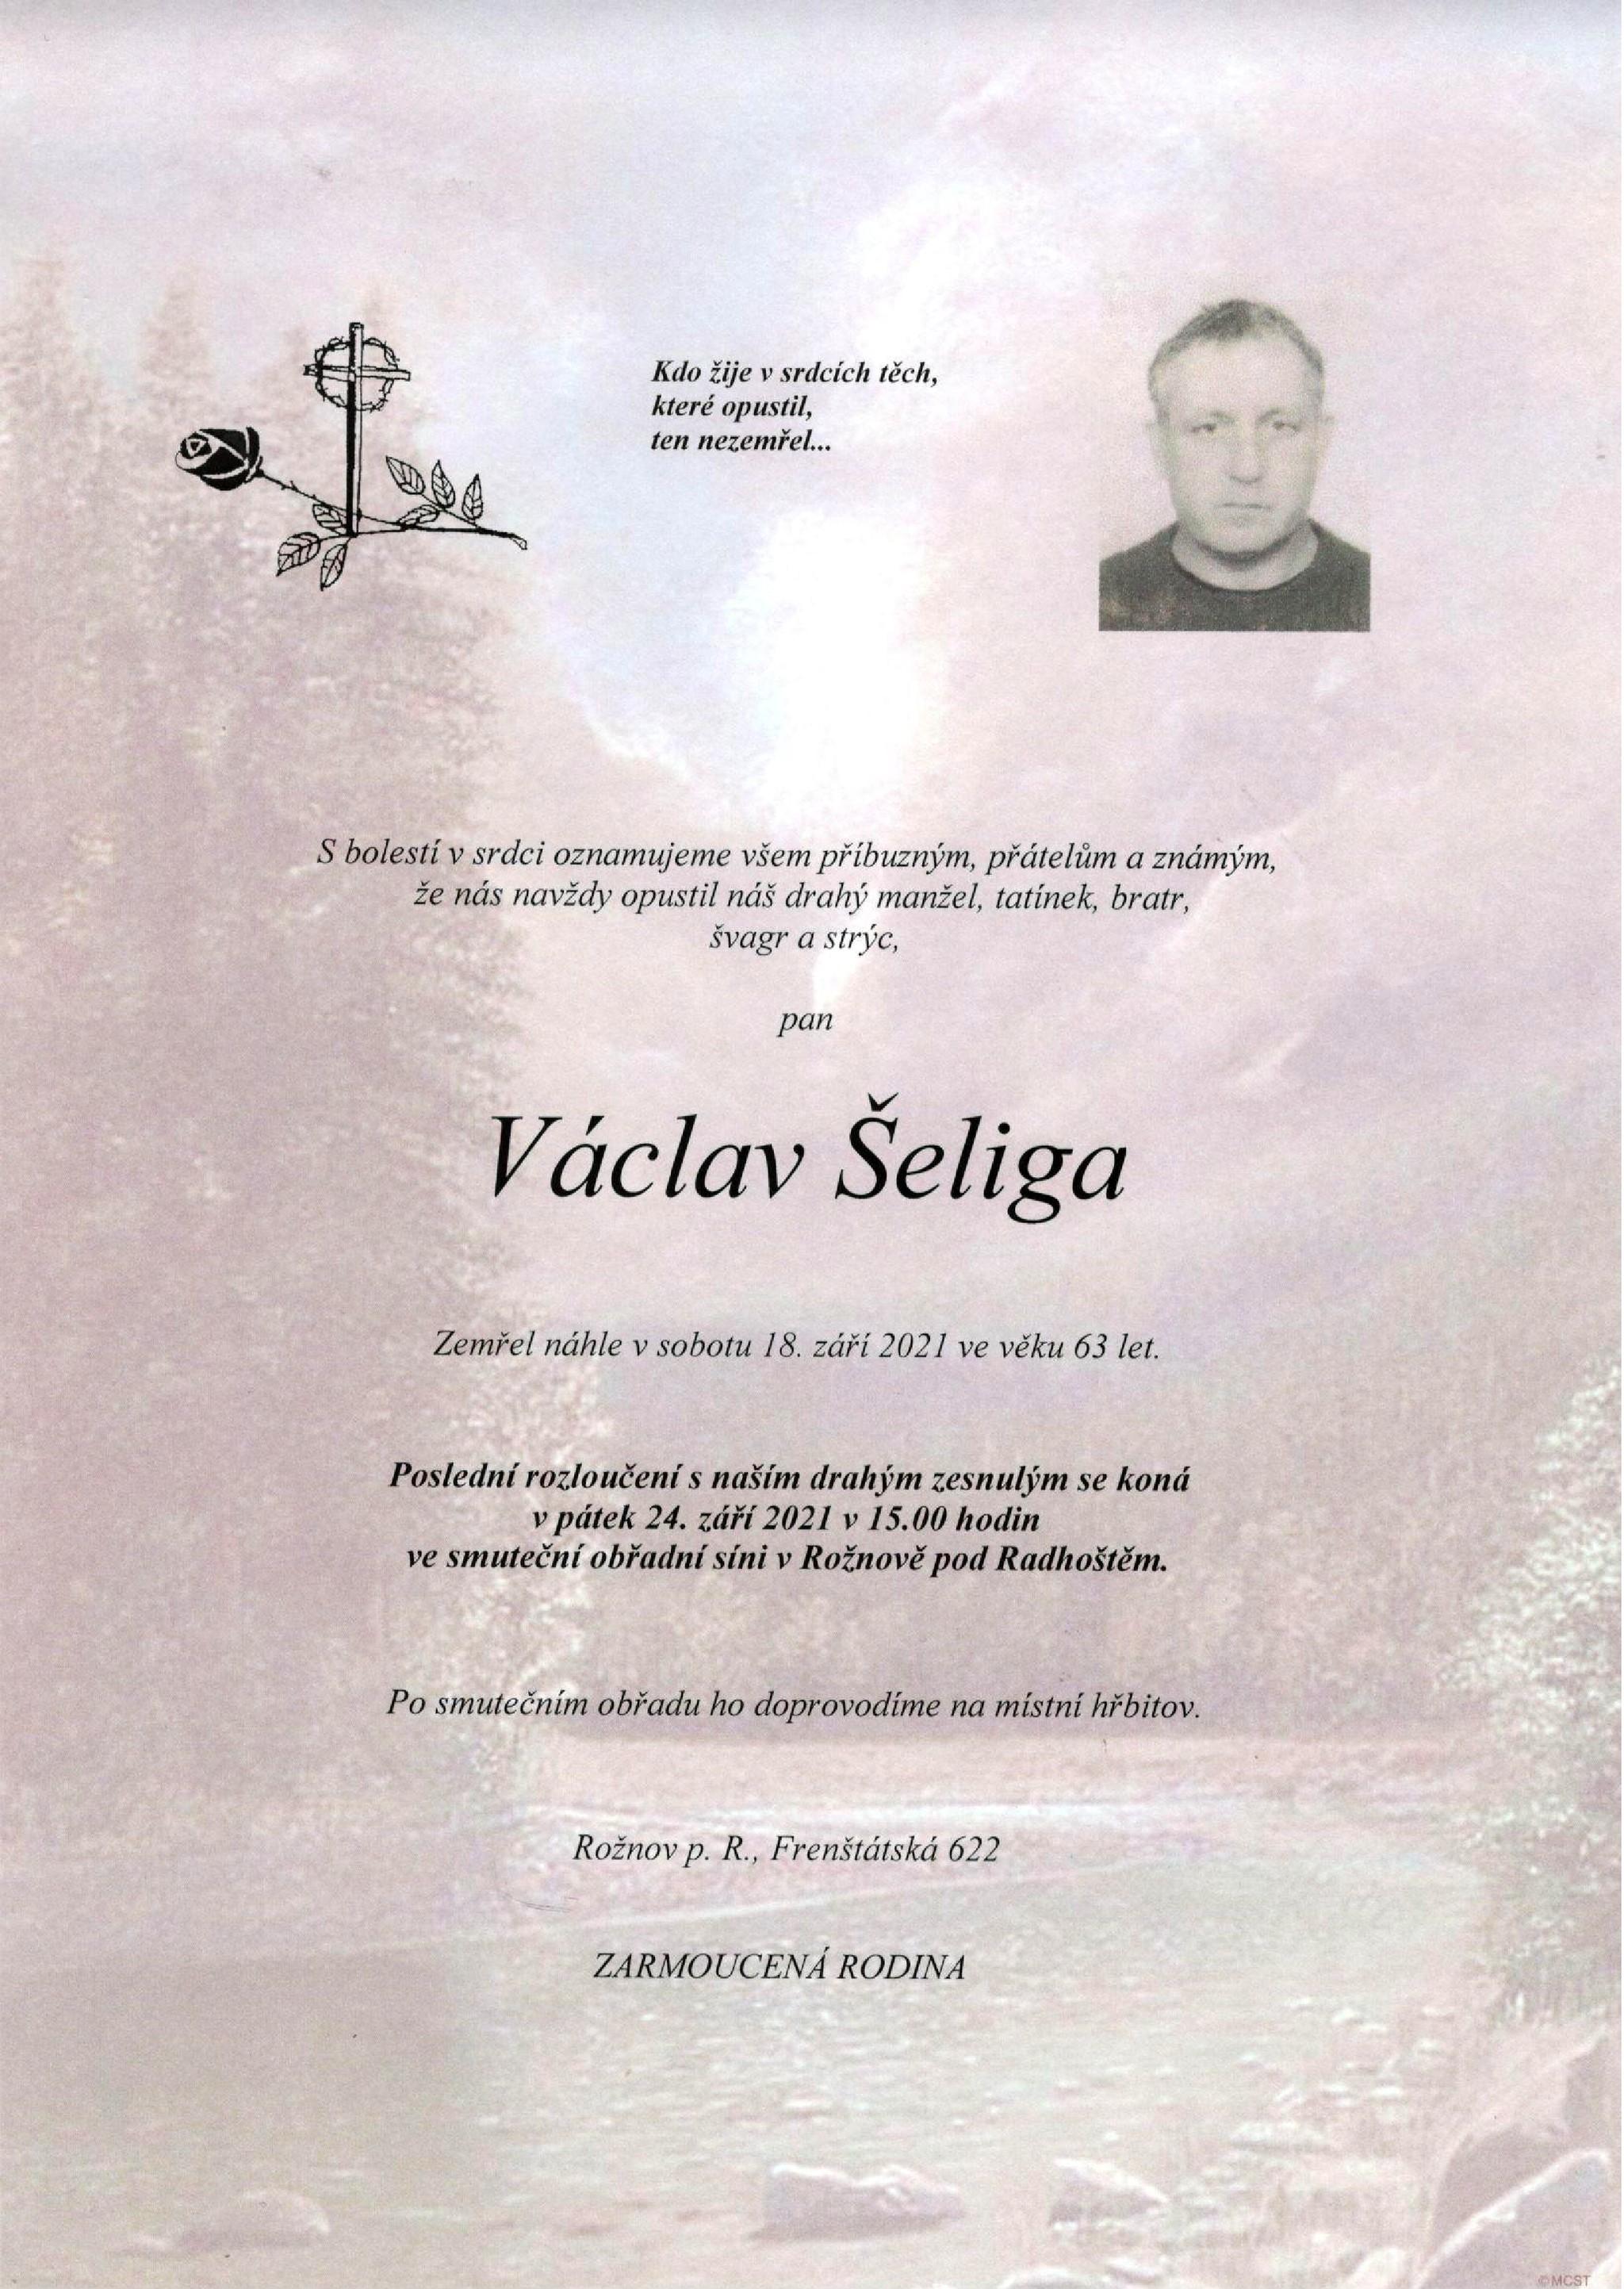 Václav Šeliga